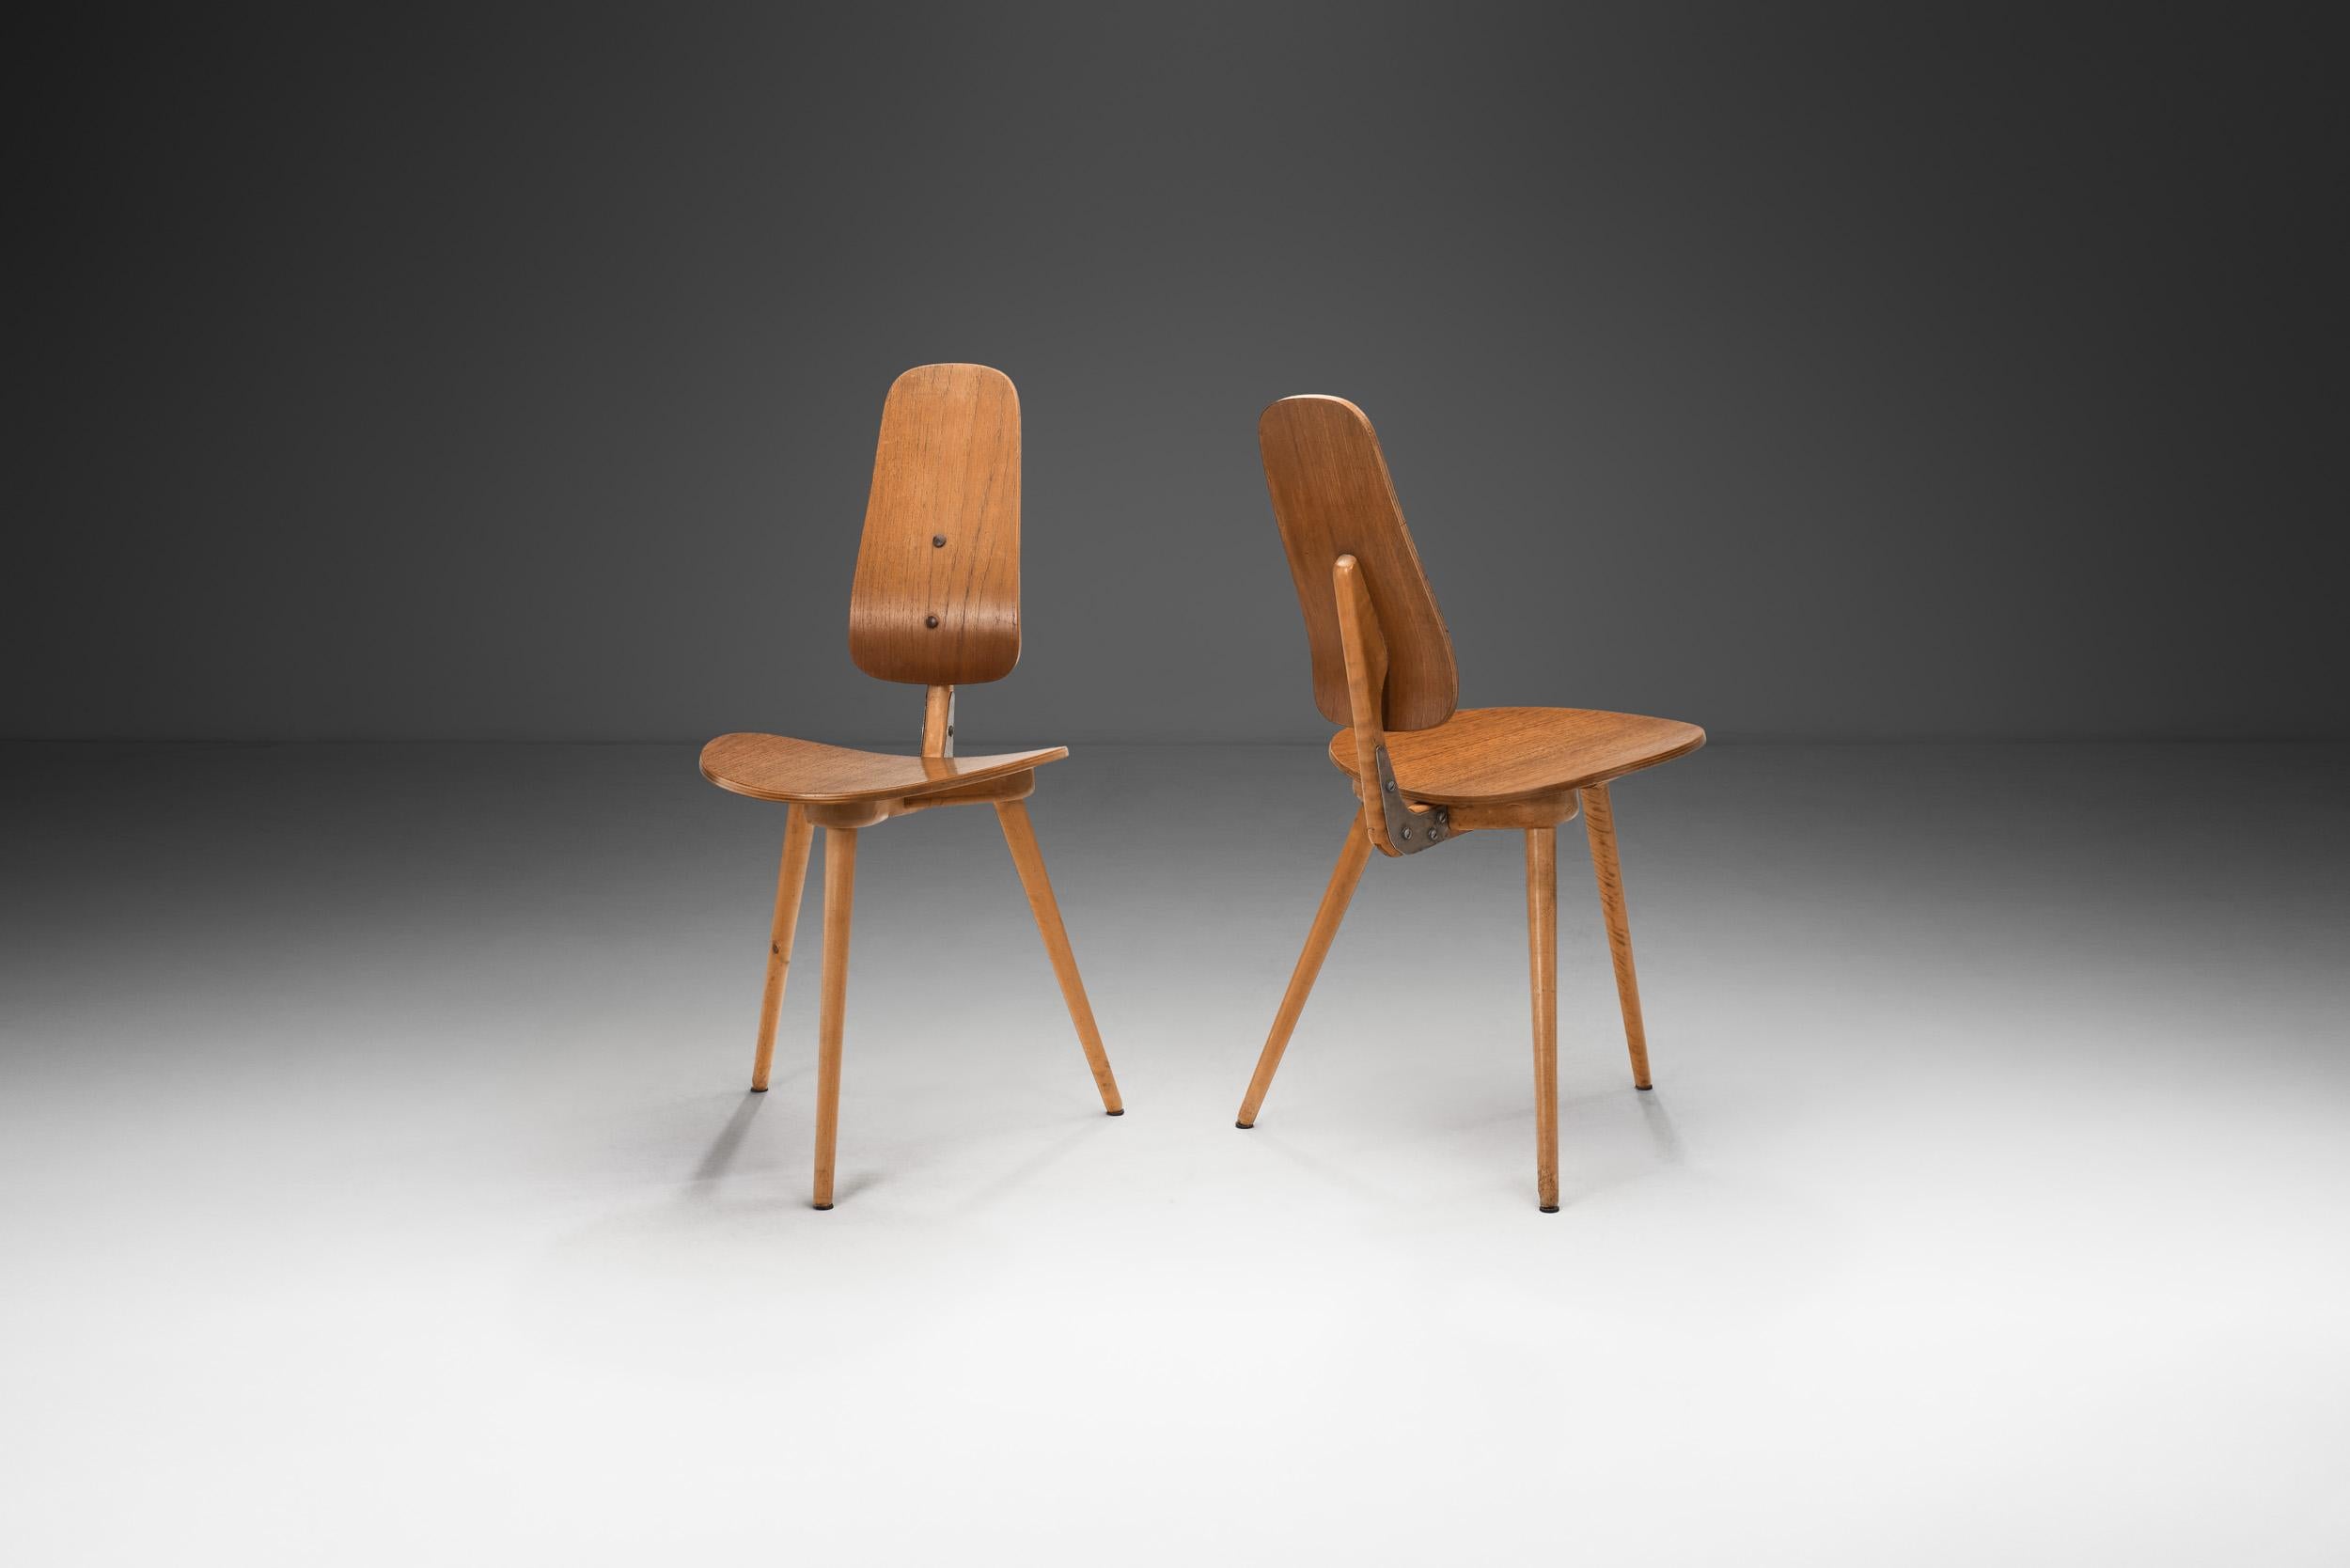 Le designer Bengt Ruda a été le premier designer qualifié à être employé par Ikea. Avant d'être recruté en 1957, il avait conçu des meubles pour le grand magasin haut de gamme Nordiska Kompaniet (NK), travaillant notamment sur la série